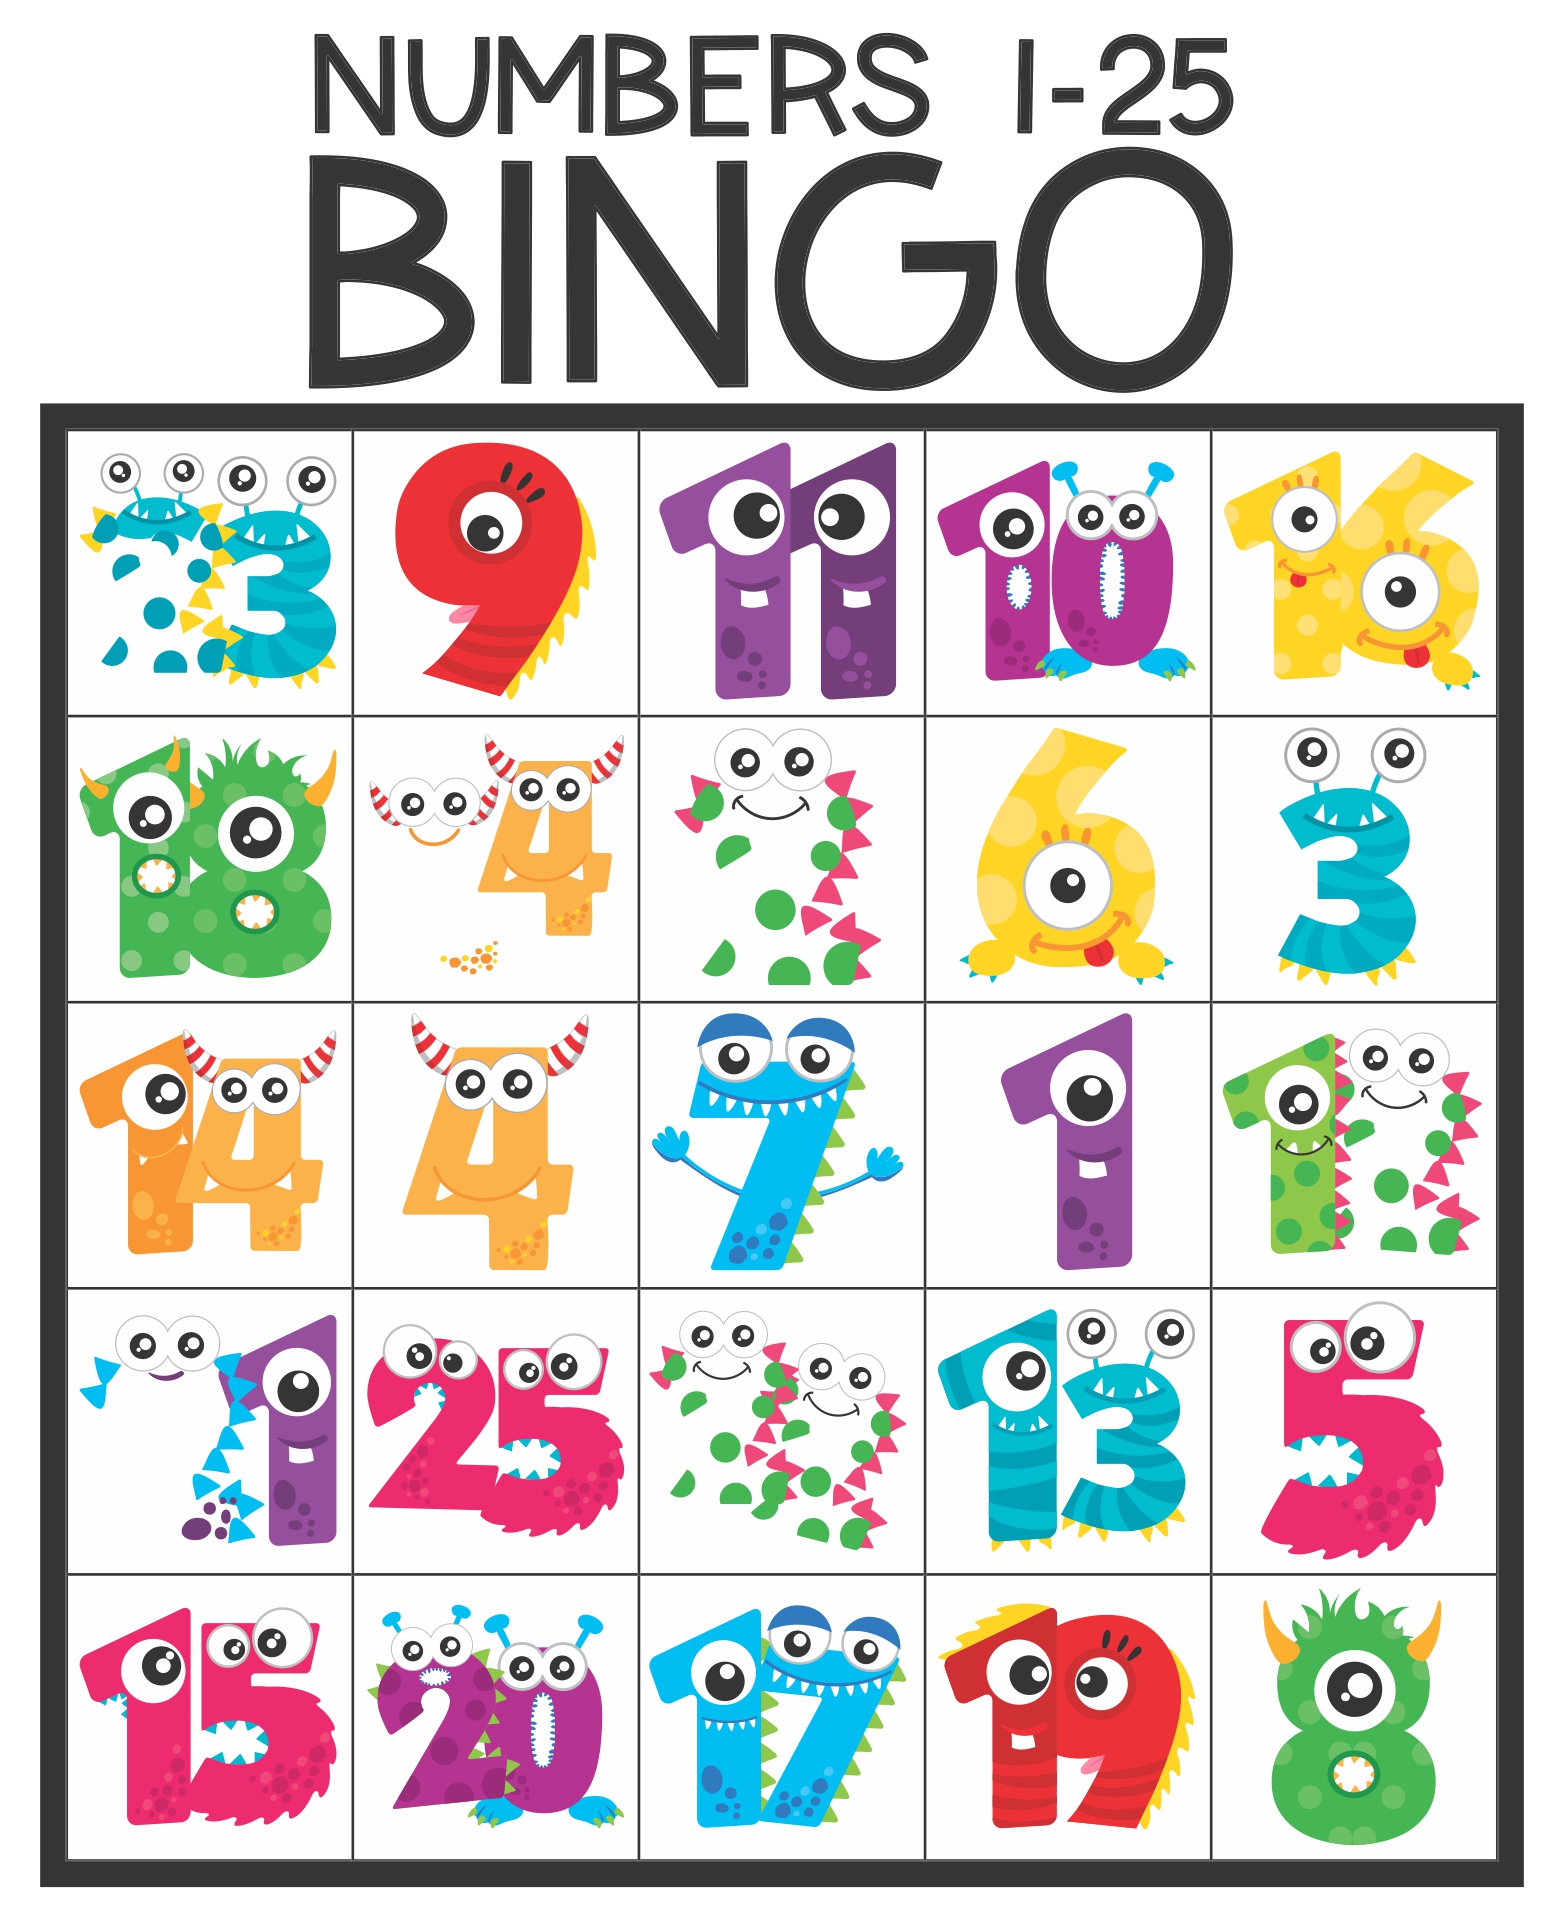 10 Best Printable Bingo Numbers 1 75 Printablee